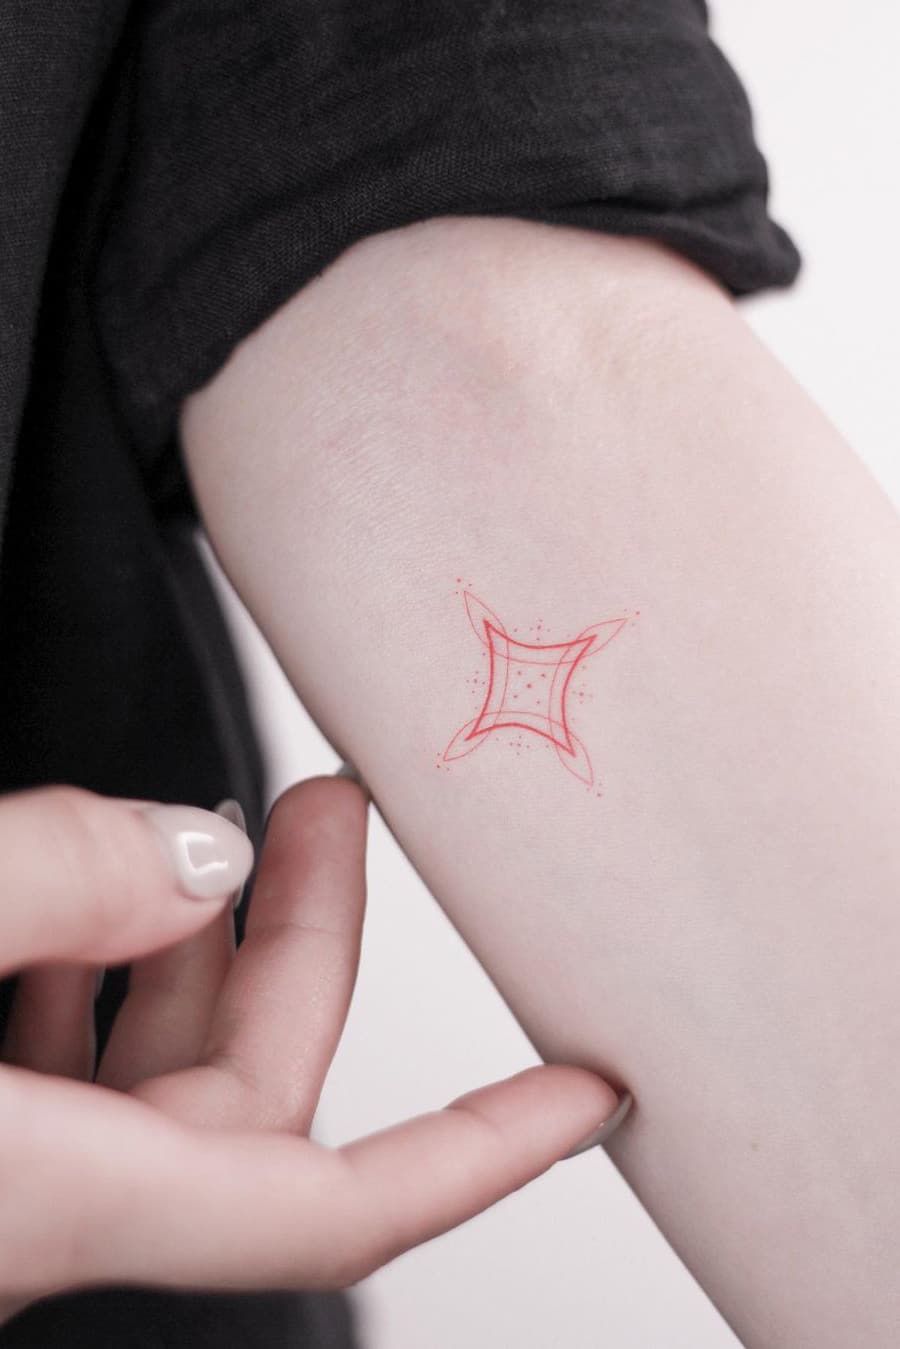 Small red tattoo